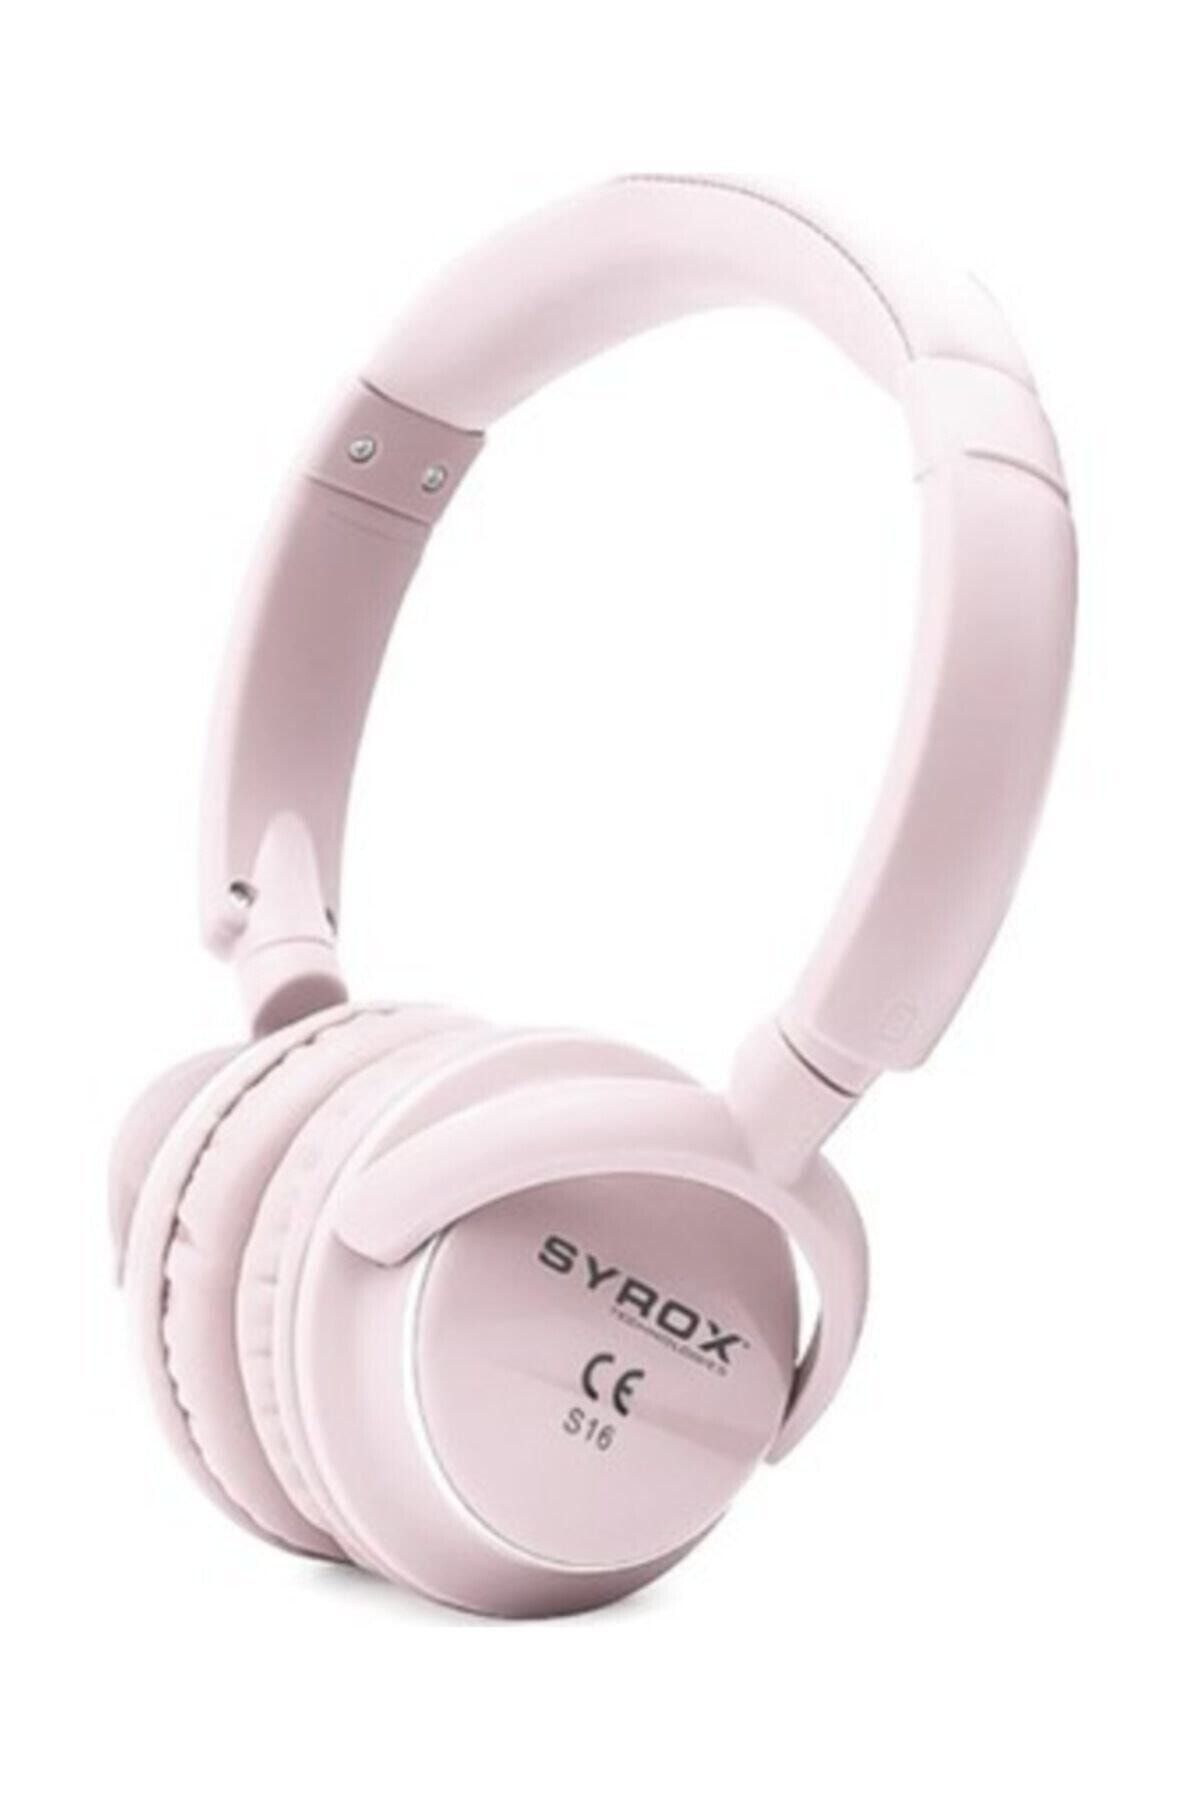 Syrox Pembe S16 Kablosuz Hafıza Kartlı Bluetooth Kulak Üstü Kulaklık